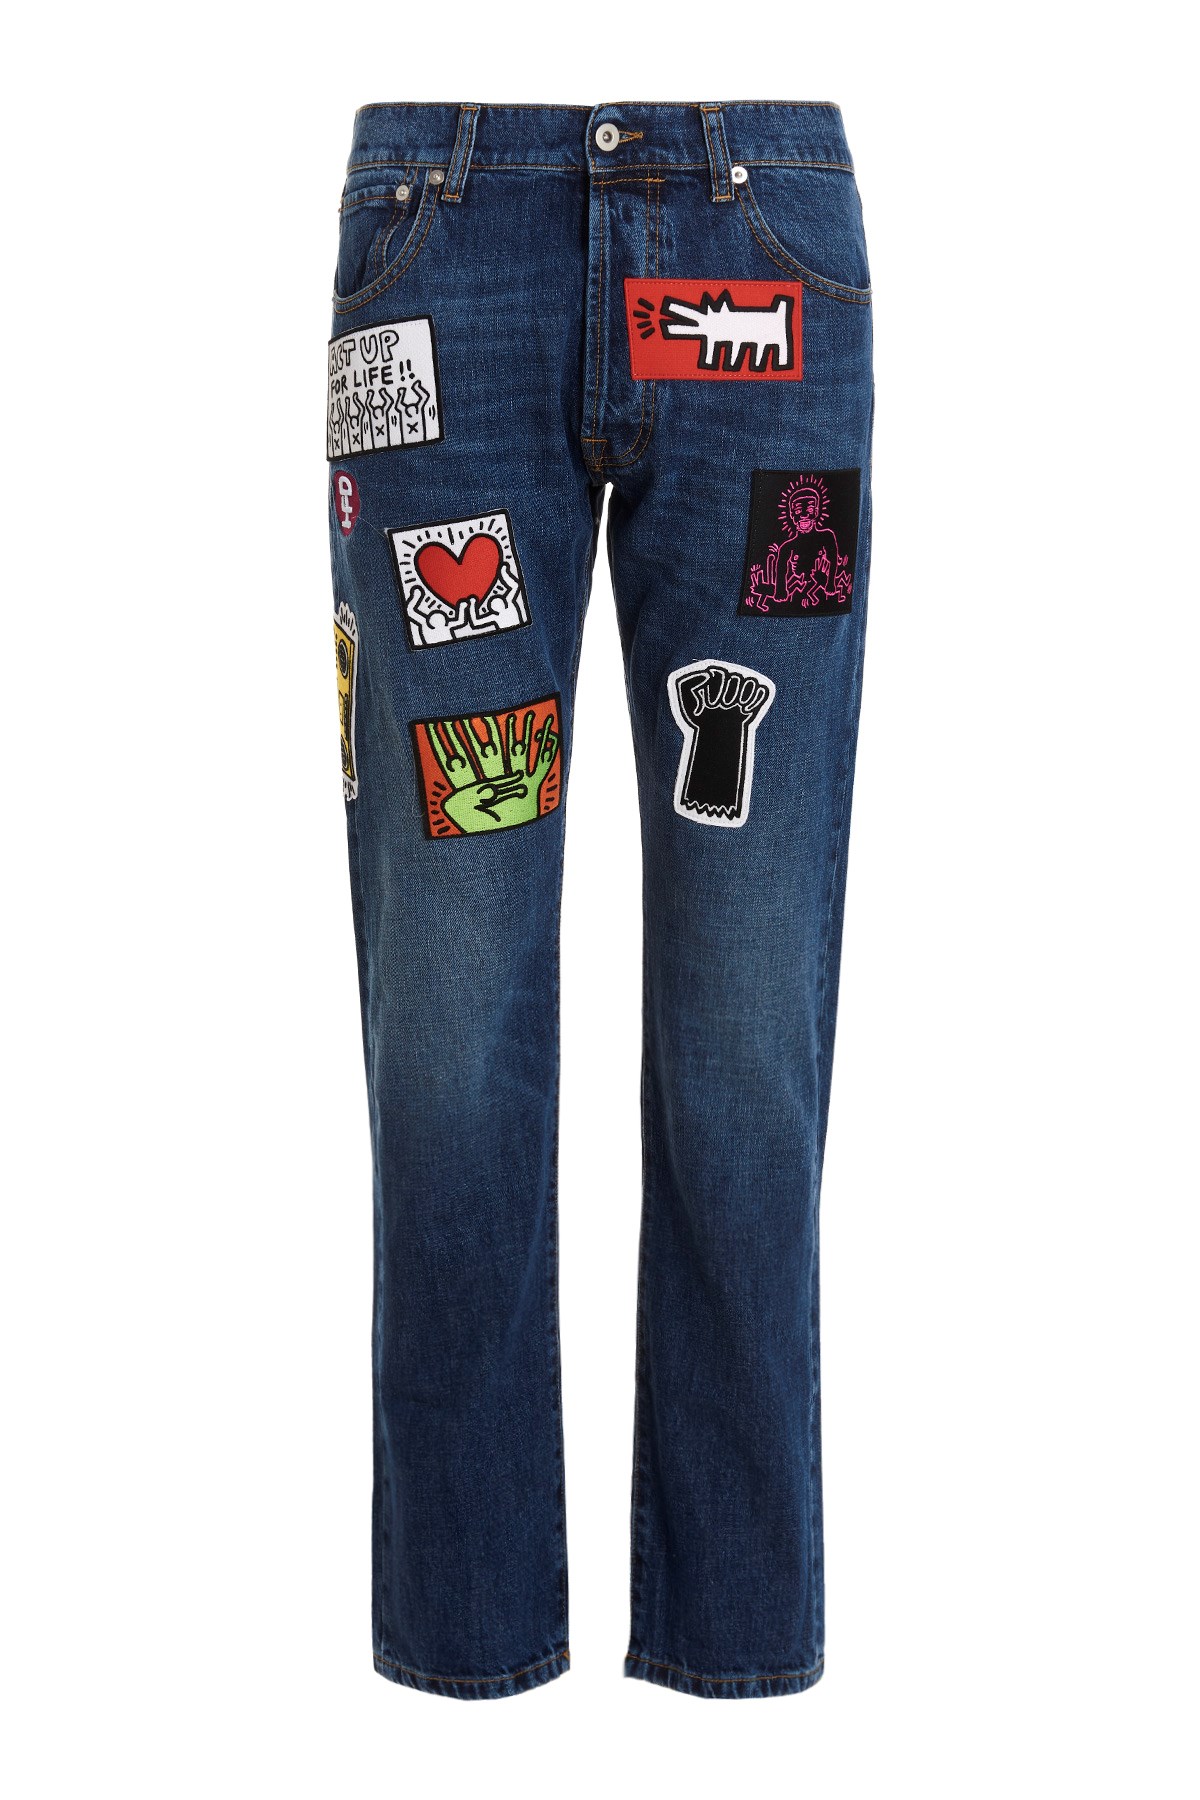 HONEY FUCKING DIJON Jeans 'Keith Haring'